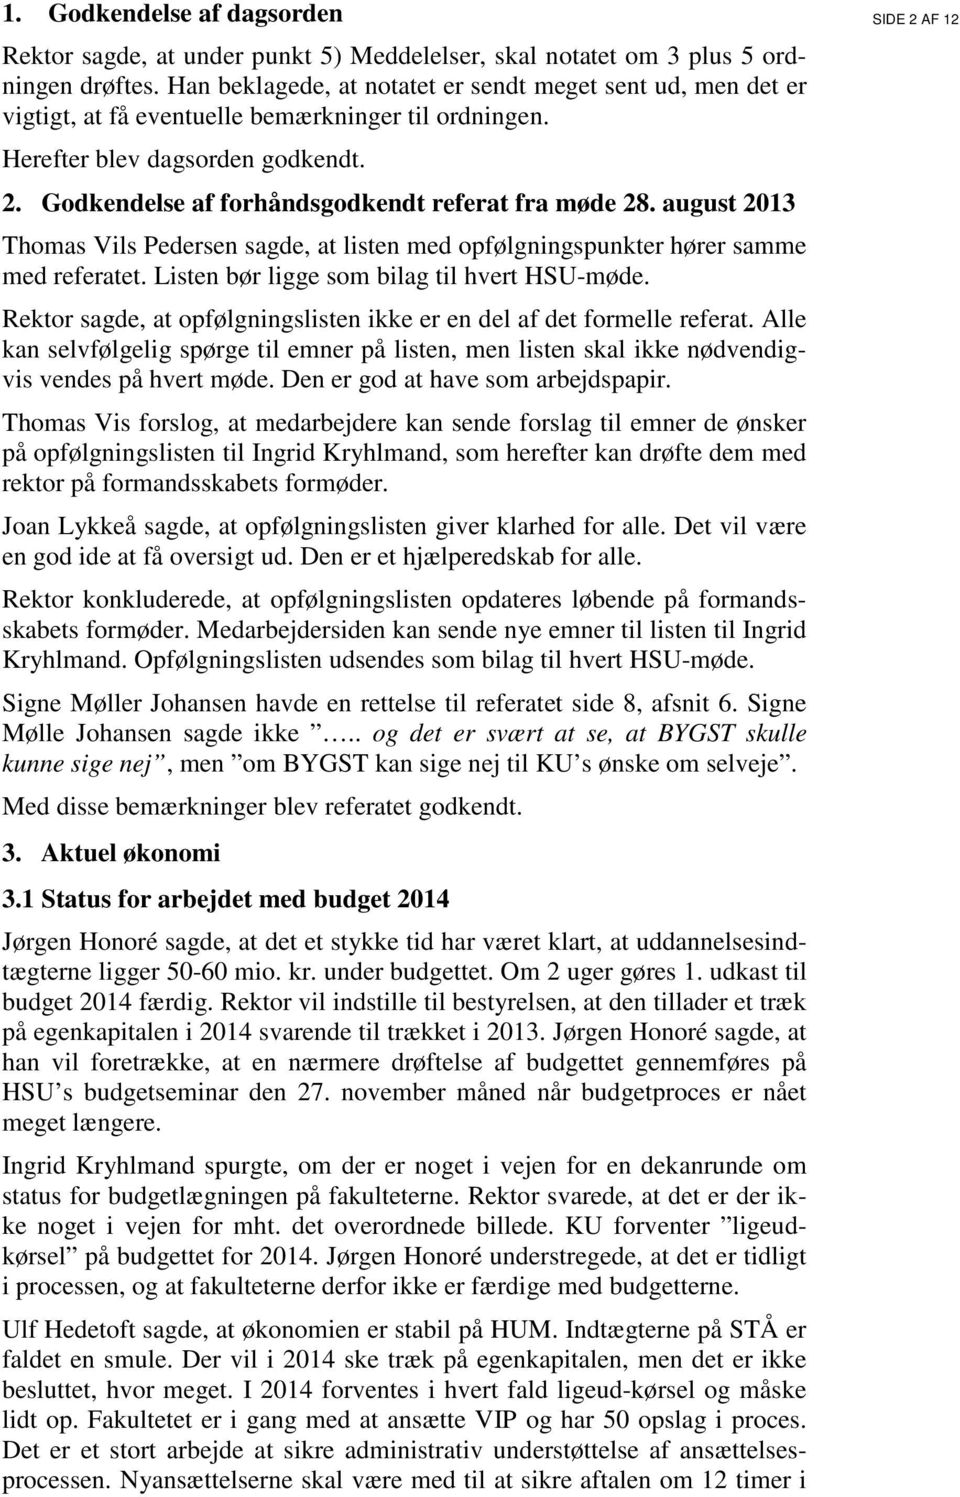 Godkendelse af forhåndsgodkendt referat fra møde 28. august 2013 Thomas Vils Pedersen sagde, at listen med opfølgningspunkter hører samme med referatet. Listen bør ligge som bilag til hvert HSU-møde.